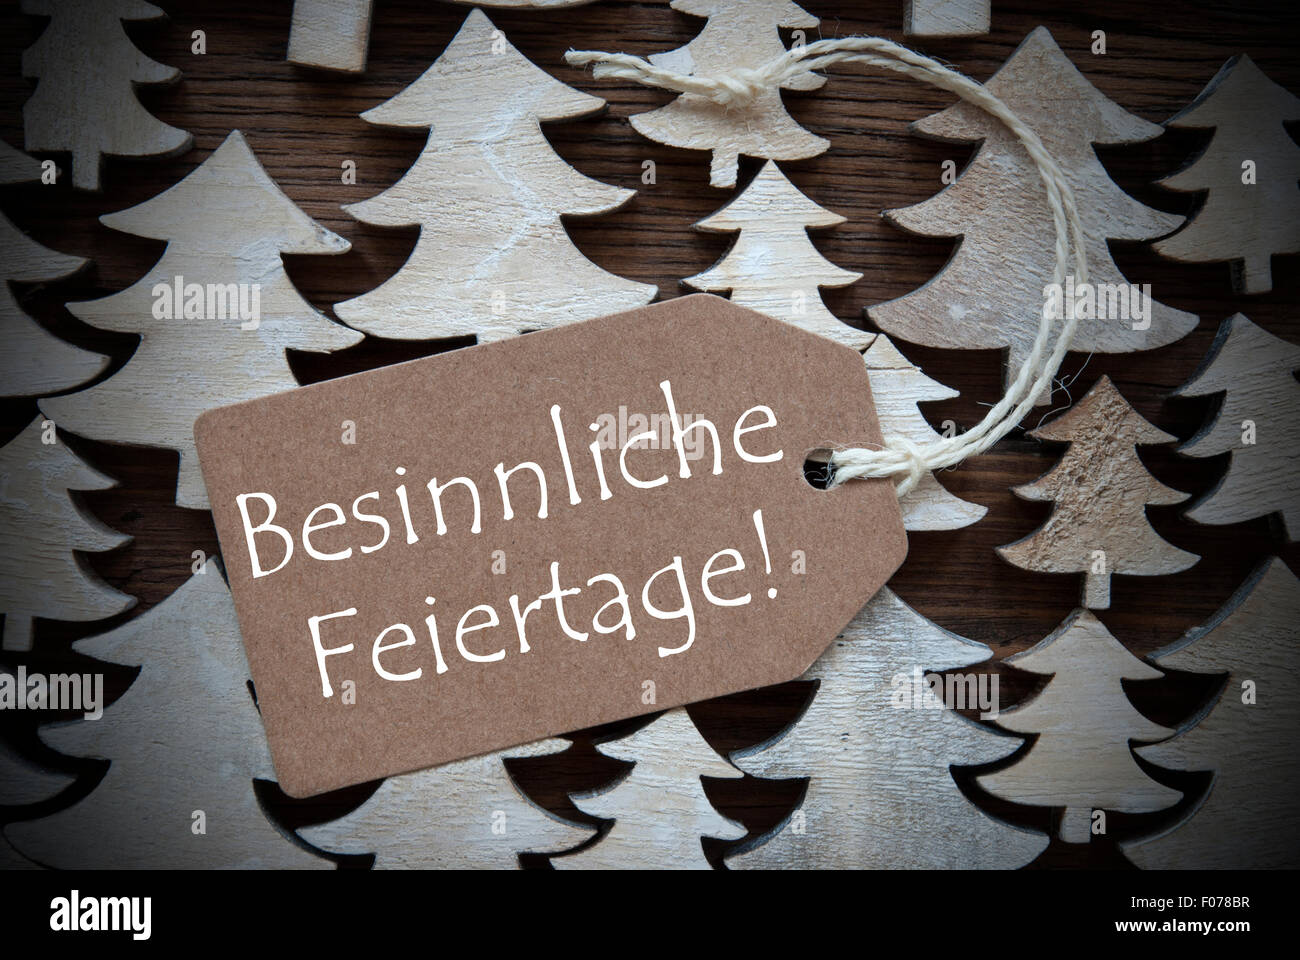 Etiqueta Feiertage Besinnliche significa ¡Feliz Navidad! Foto de stock